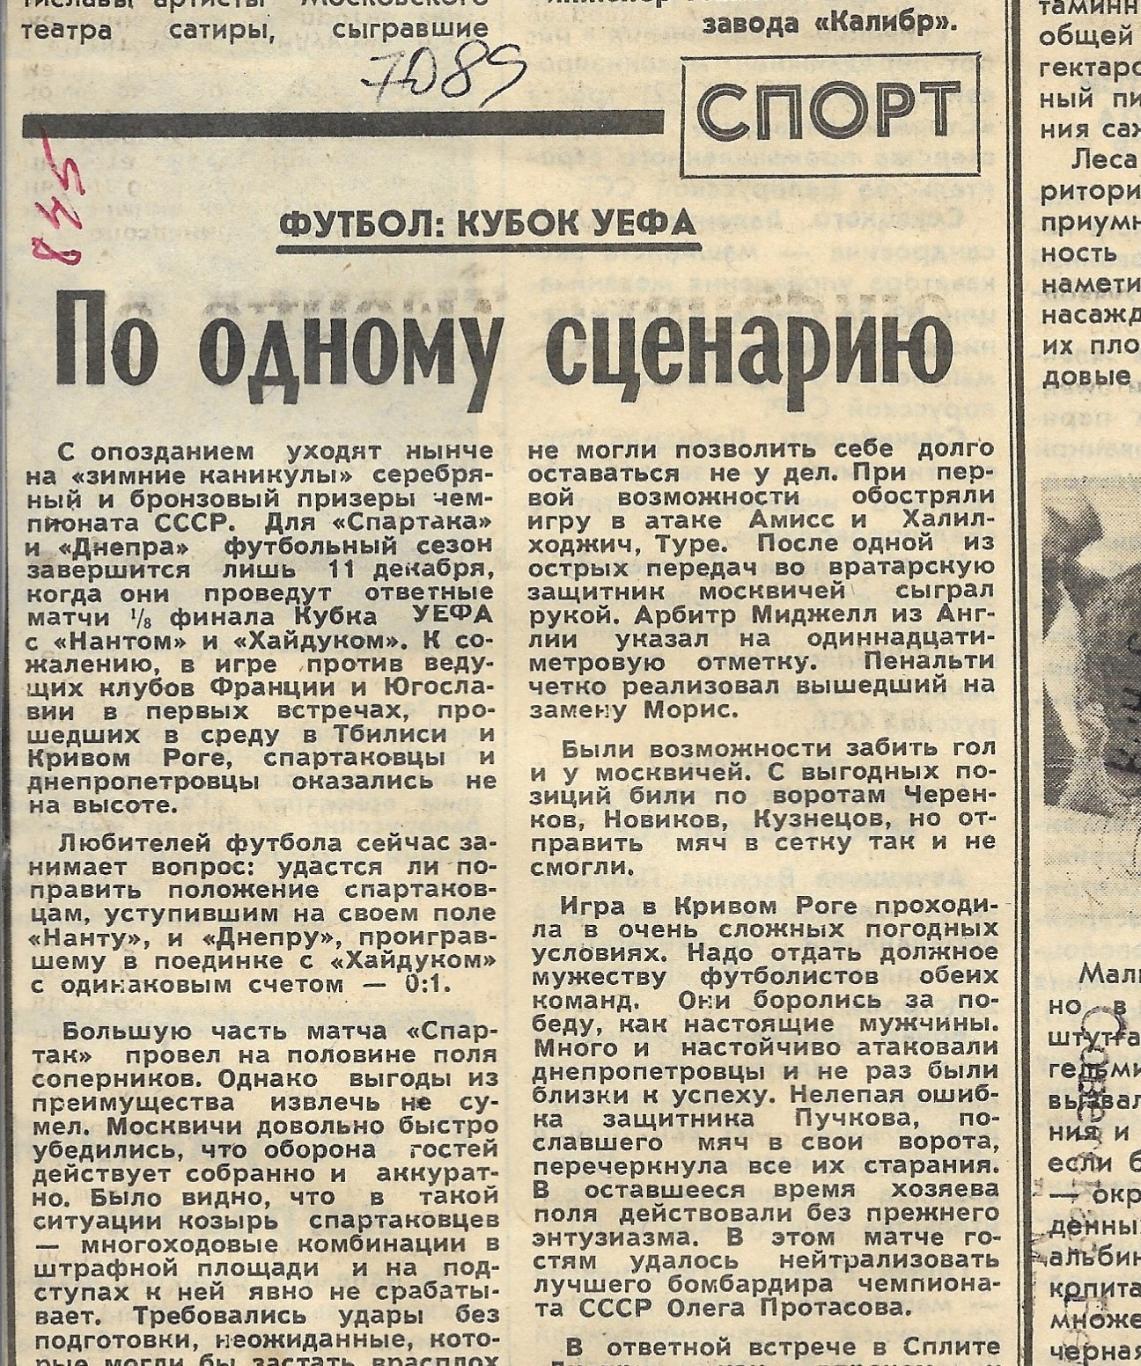 Обзор матчей_ЕВРО-Кубков._1985_(70 89)